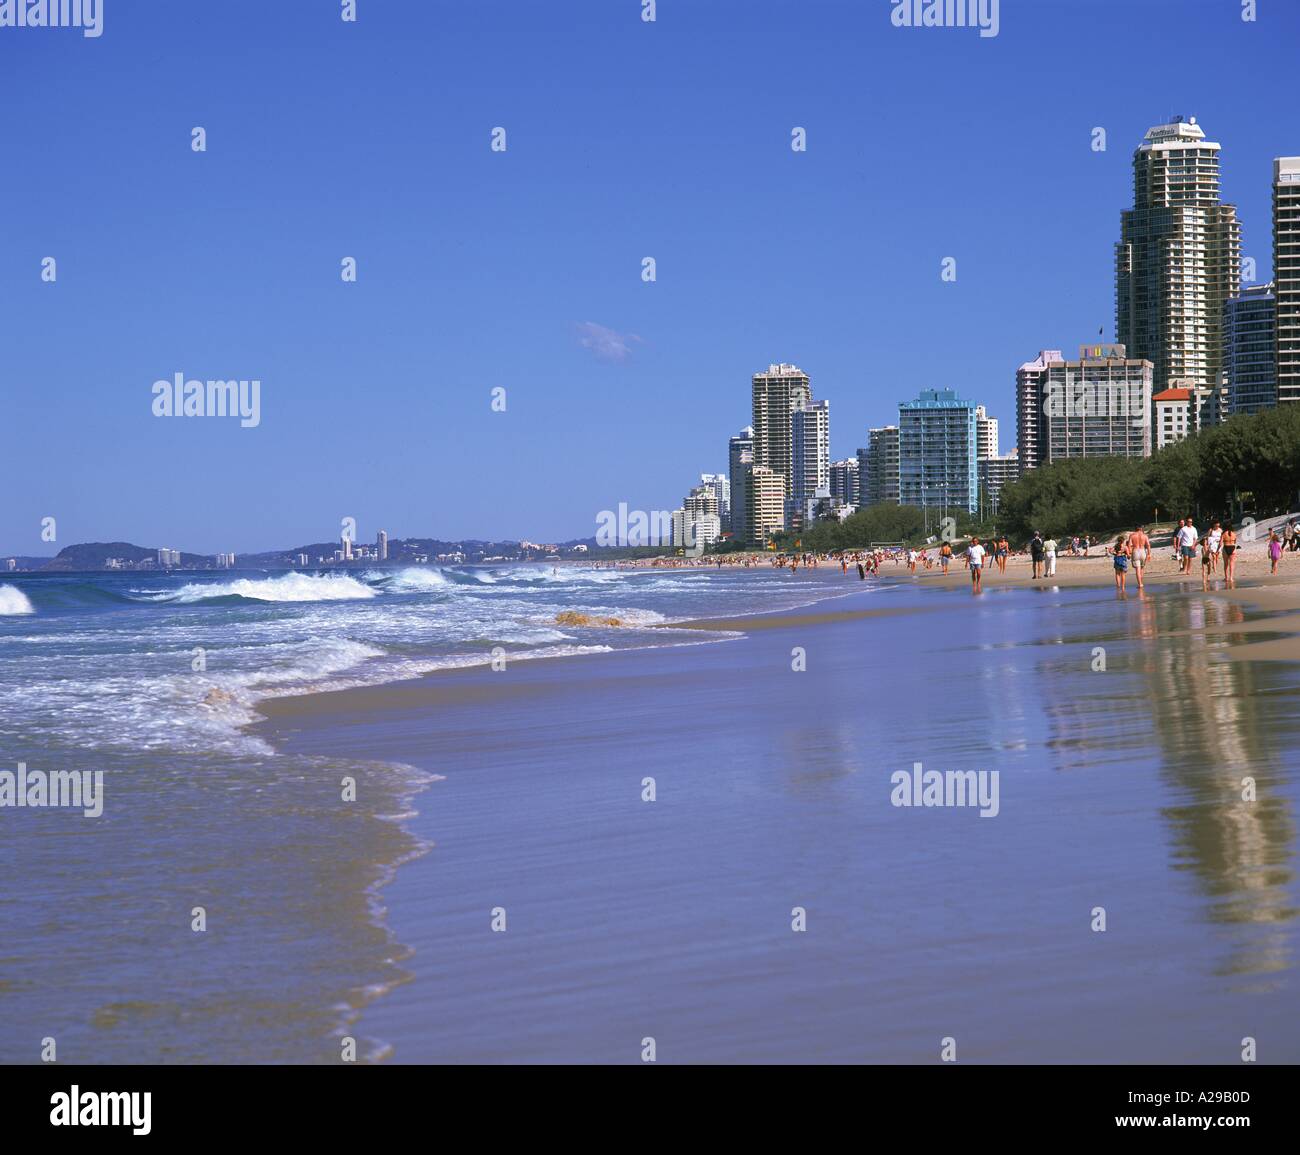 Menschenmassen am Strand von Surfers Paradise Queensland Australien M Mawson Stockfoto